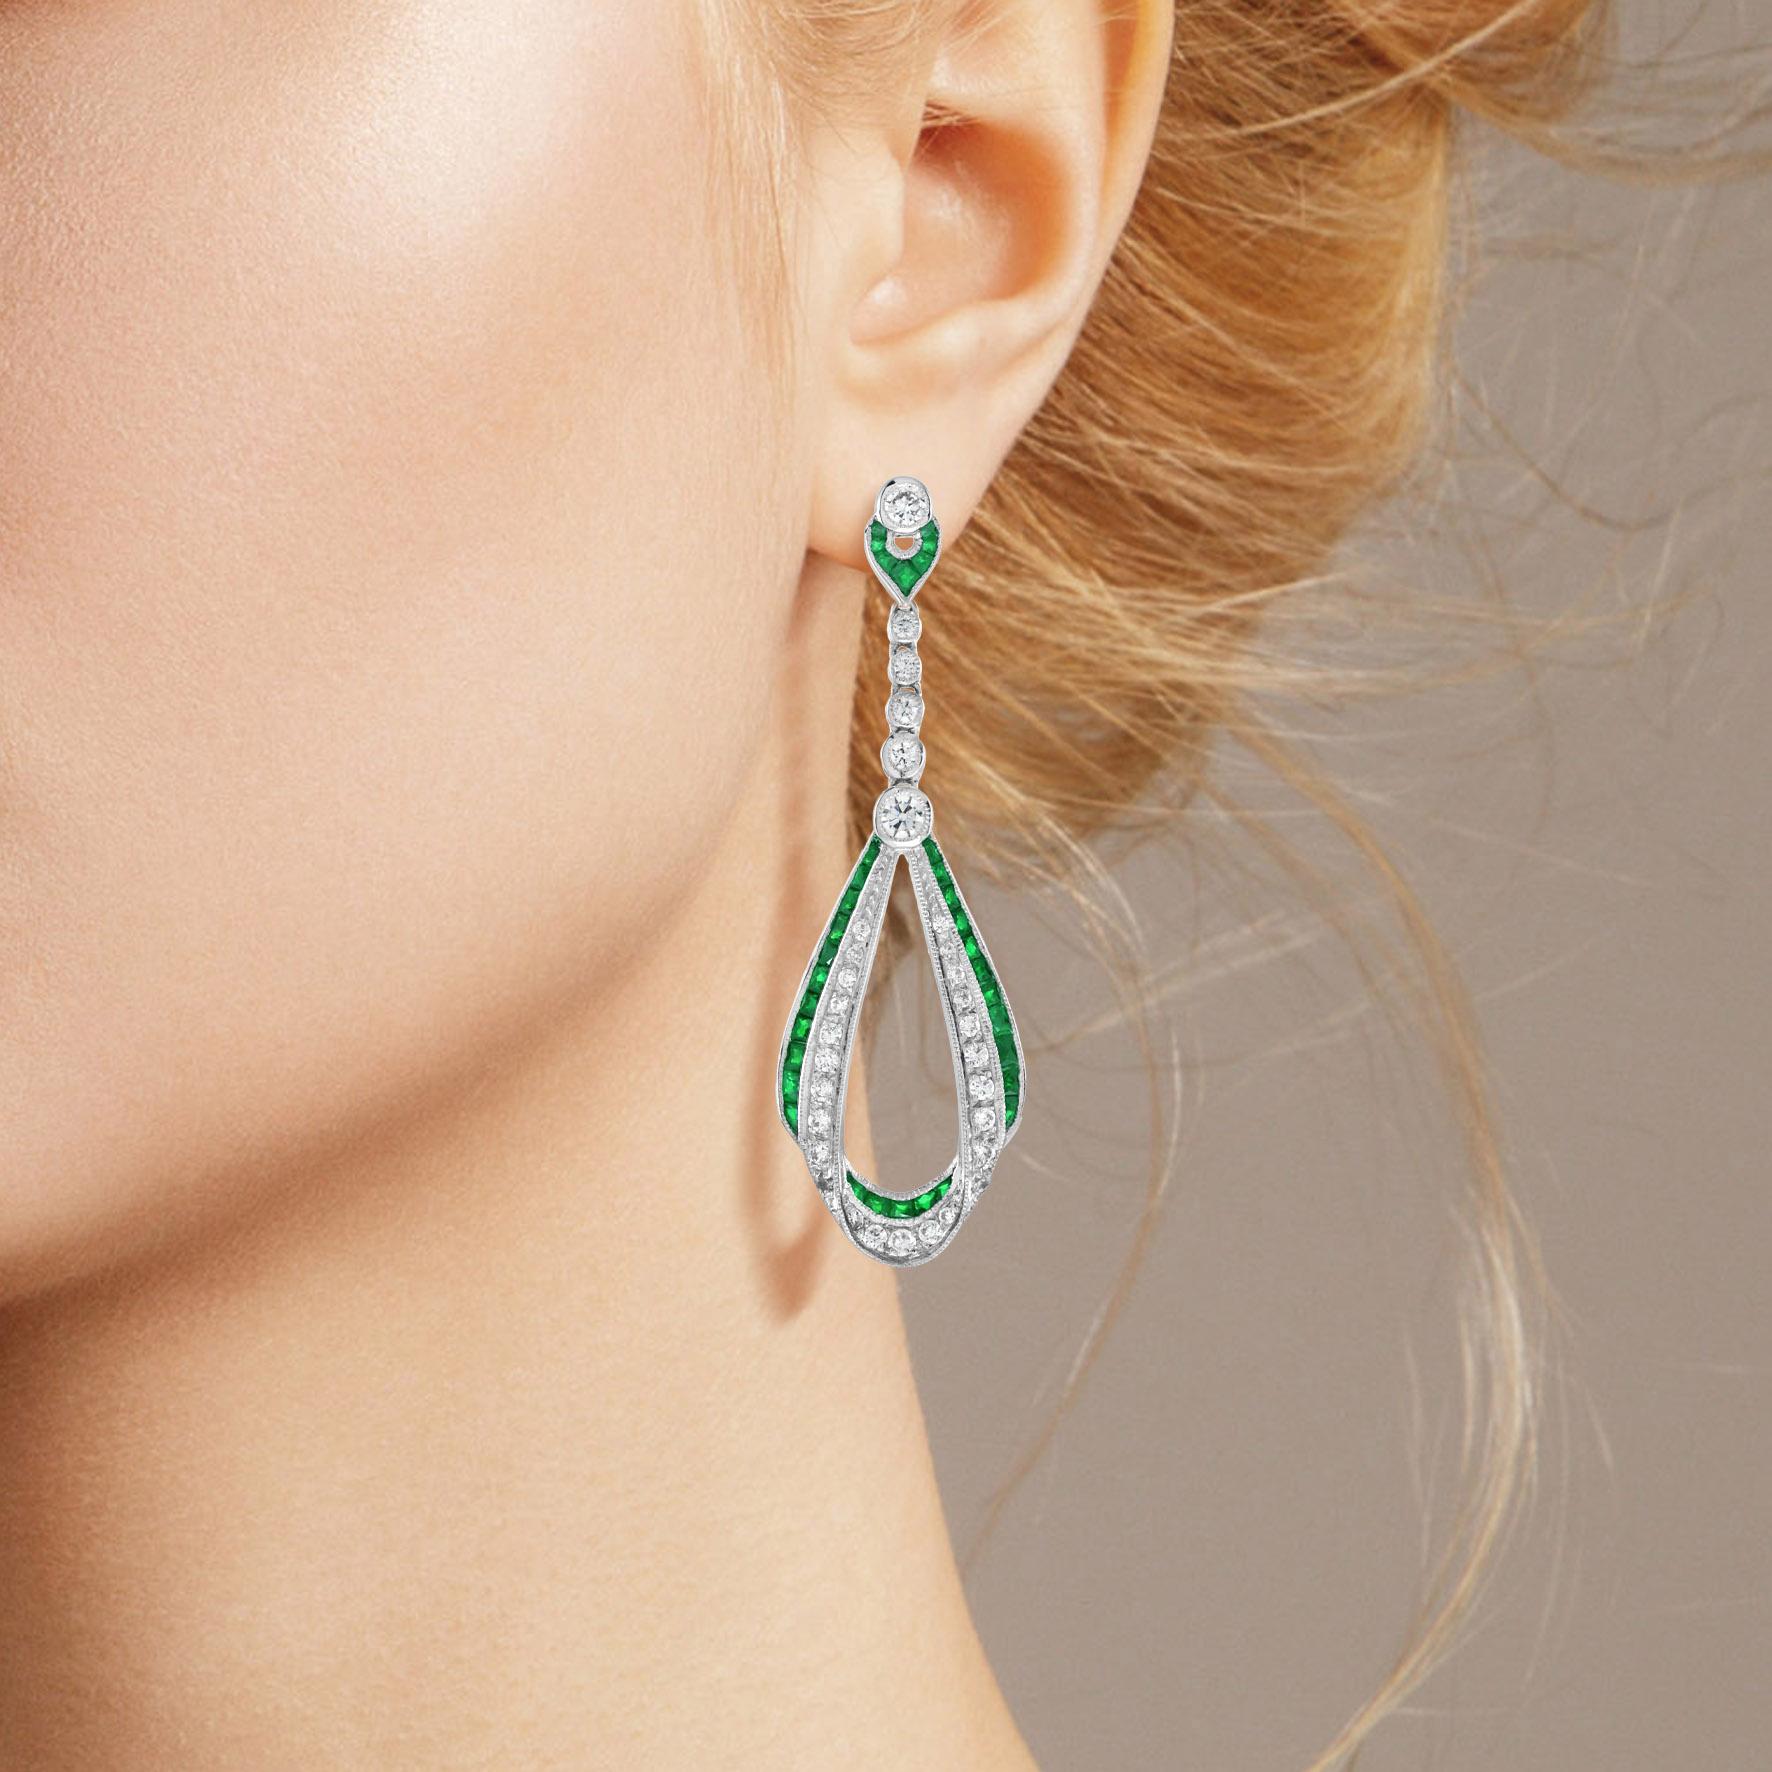 Diese Tropfenohrringe im Art-Déco-Stil sind absolut atemberaubend und außergewöhnlich. Über 5 Karat lebhafte und außergewöhnliche Smaragde säumen den Rand der Ohrringe. Und 0,89 Karat feine Diamanten. Die kunstvolle und präzise Verarbeitung des